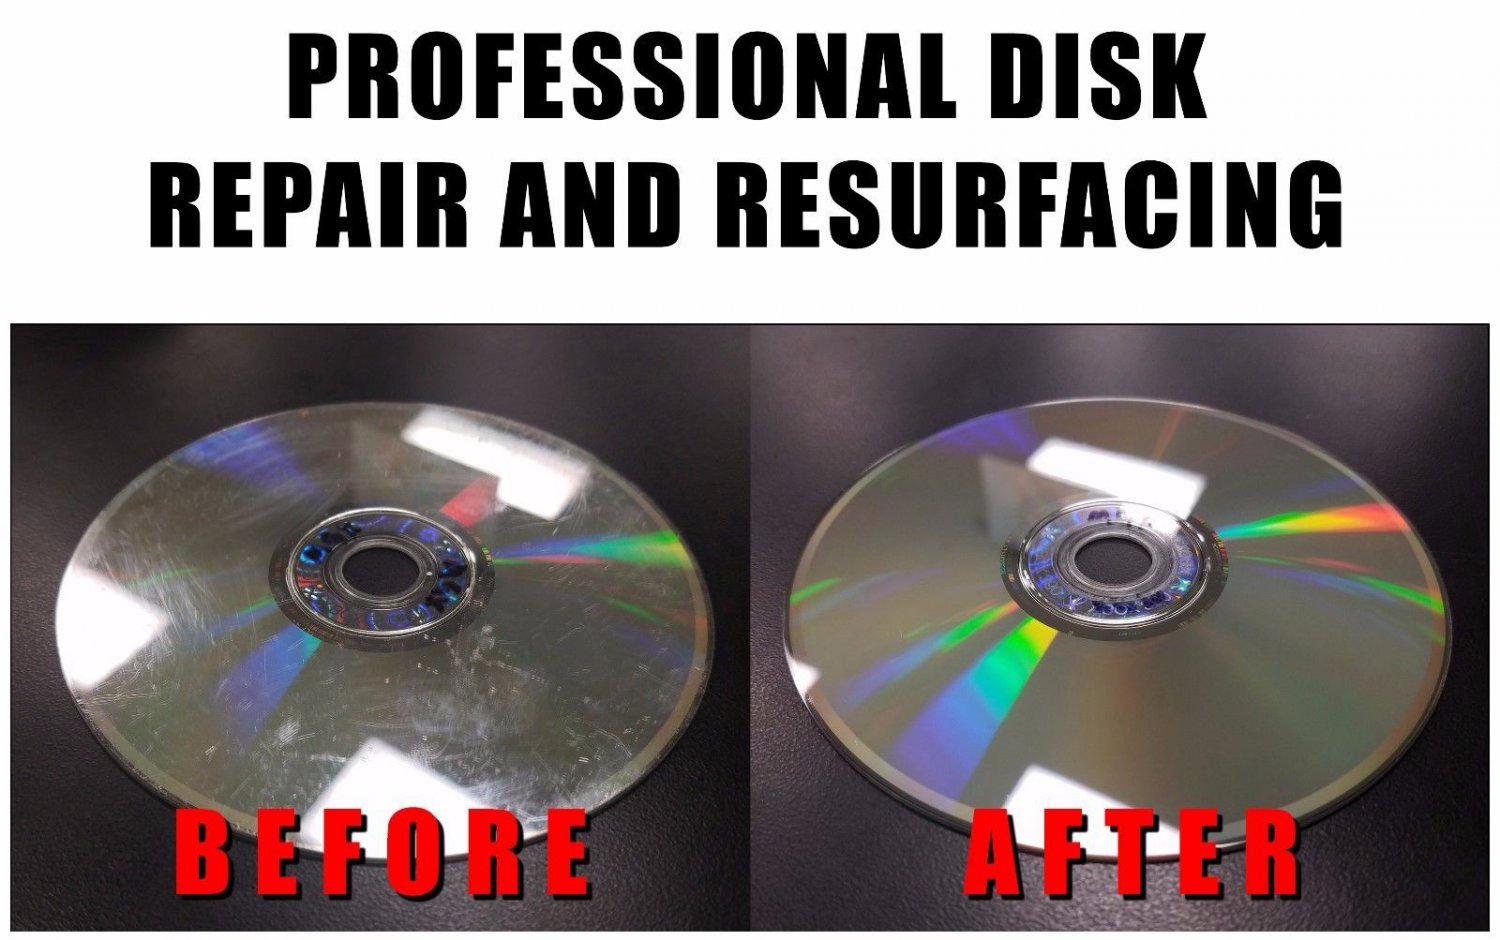 DVD Drive Repair 9.2.3.2886 download the new